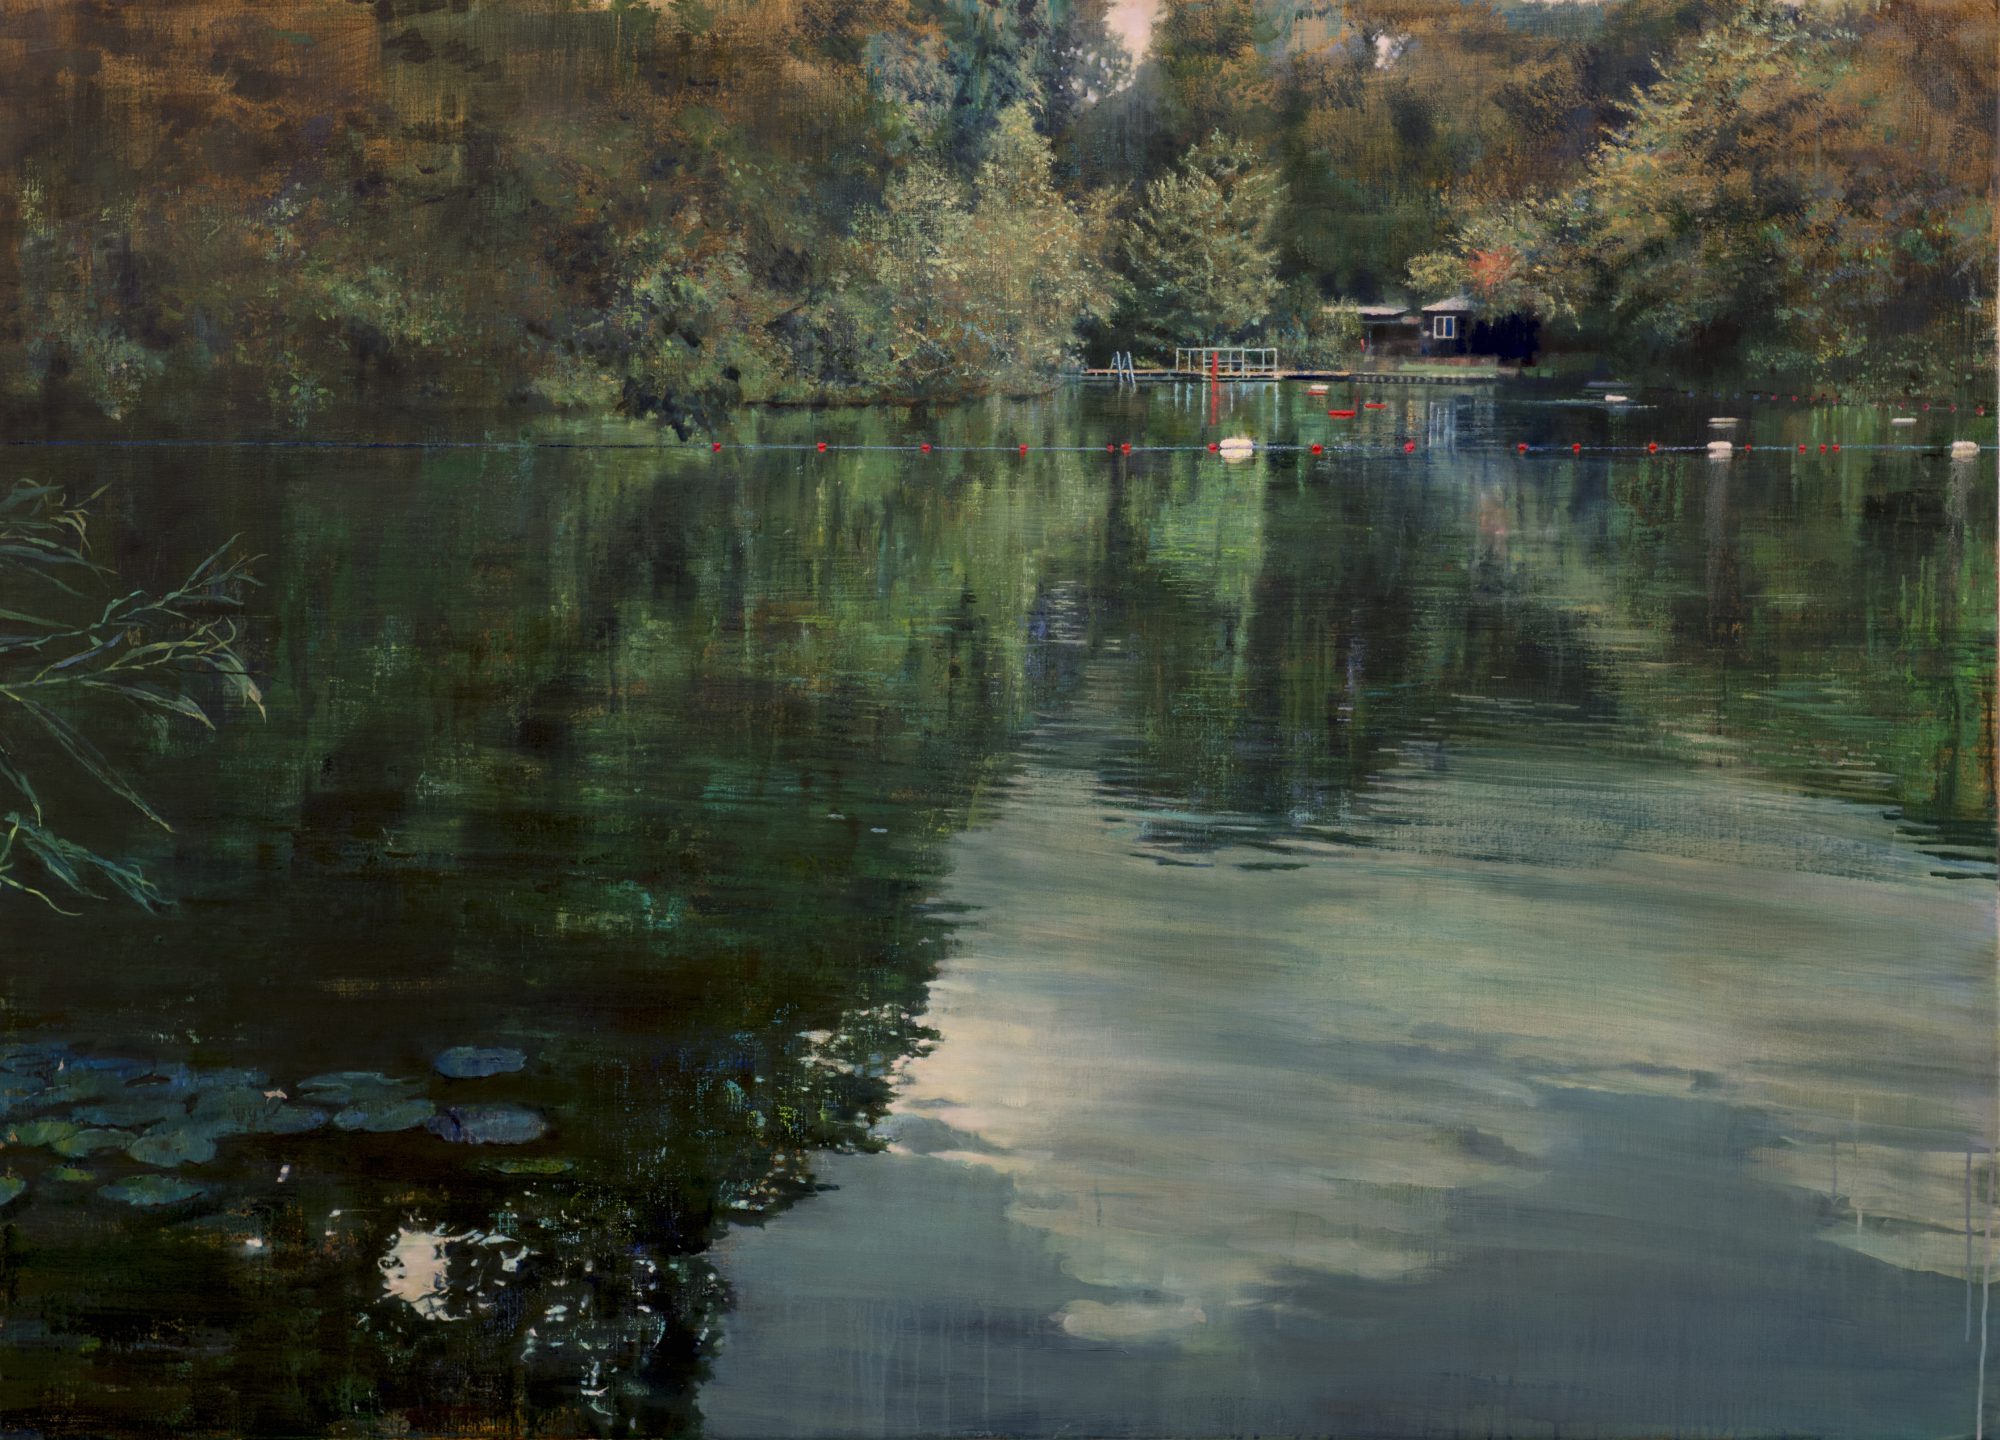 schilderij Isabella Werkhoven London Pond #5 zwemvijver Londen painting swimming pond #5 still water